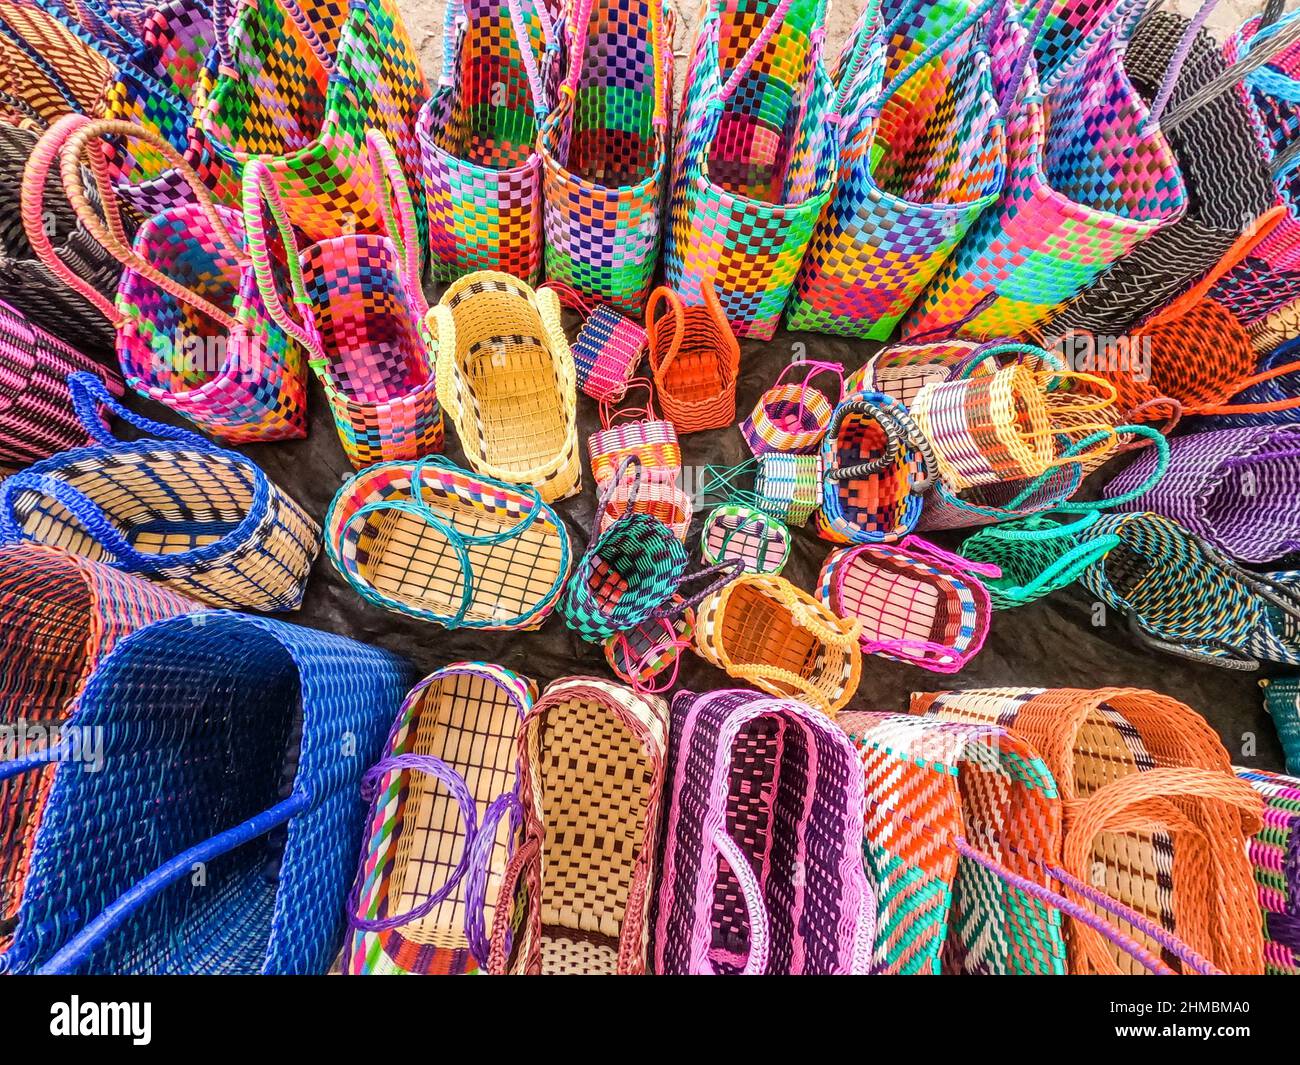 Colorful woven baskets, Chichicastenango, Guatemala Stock Photo